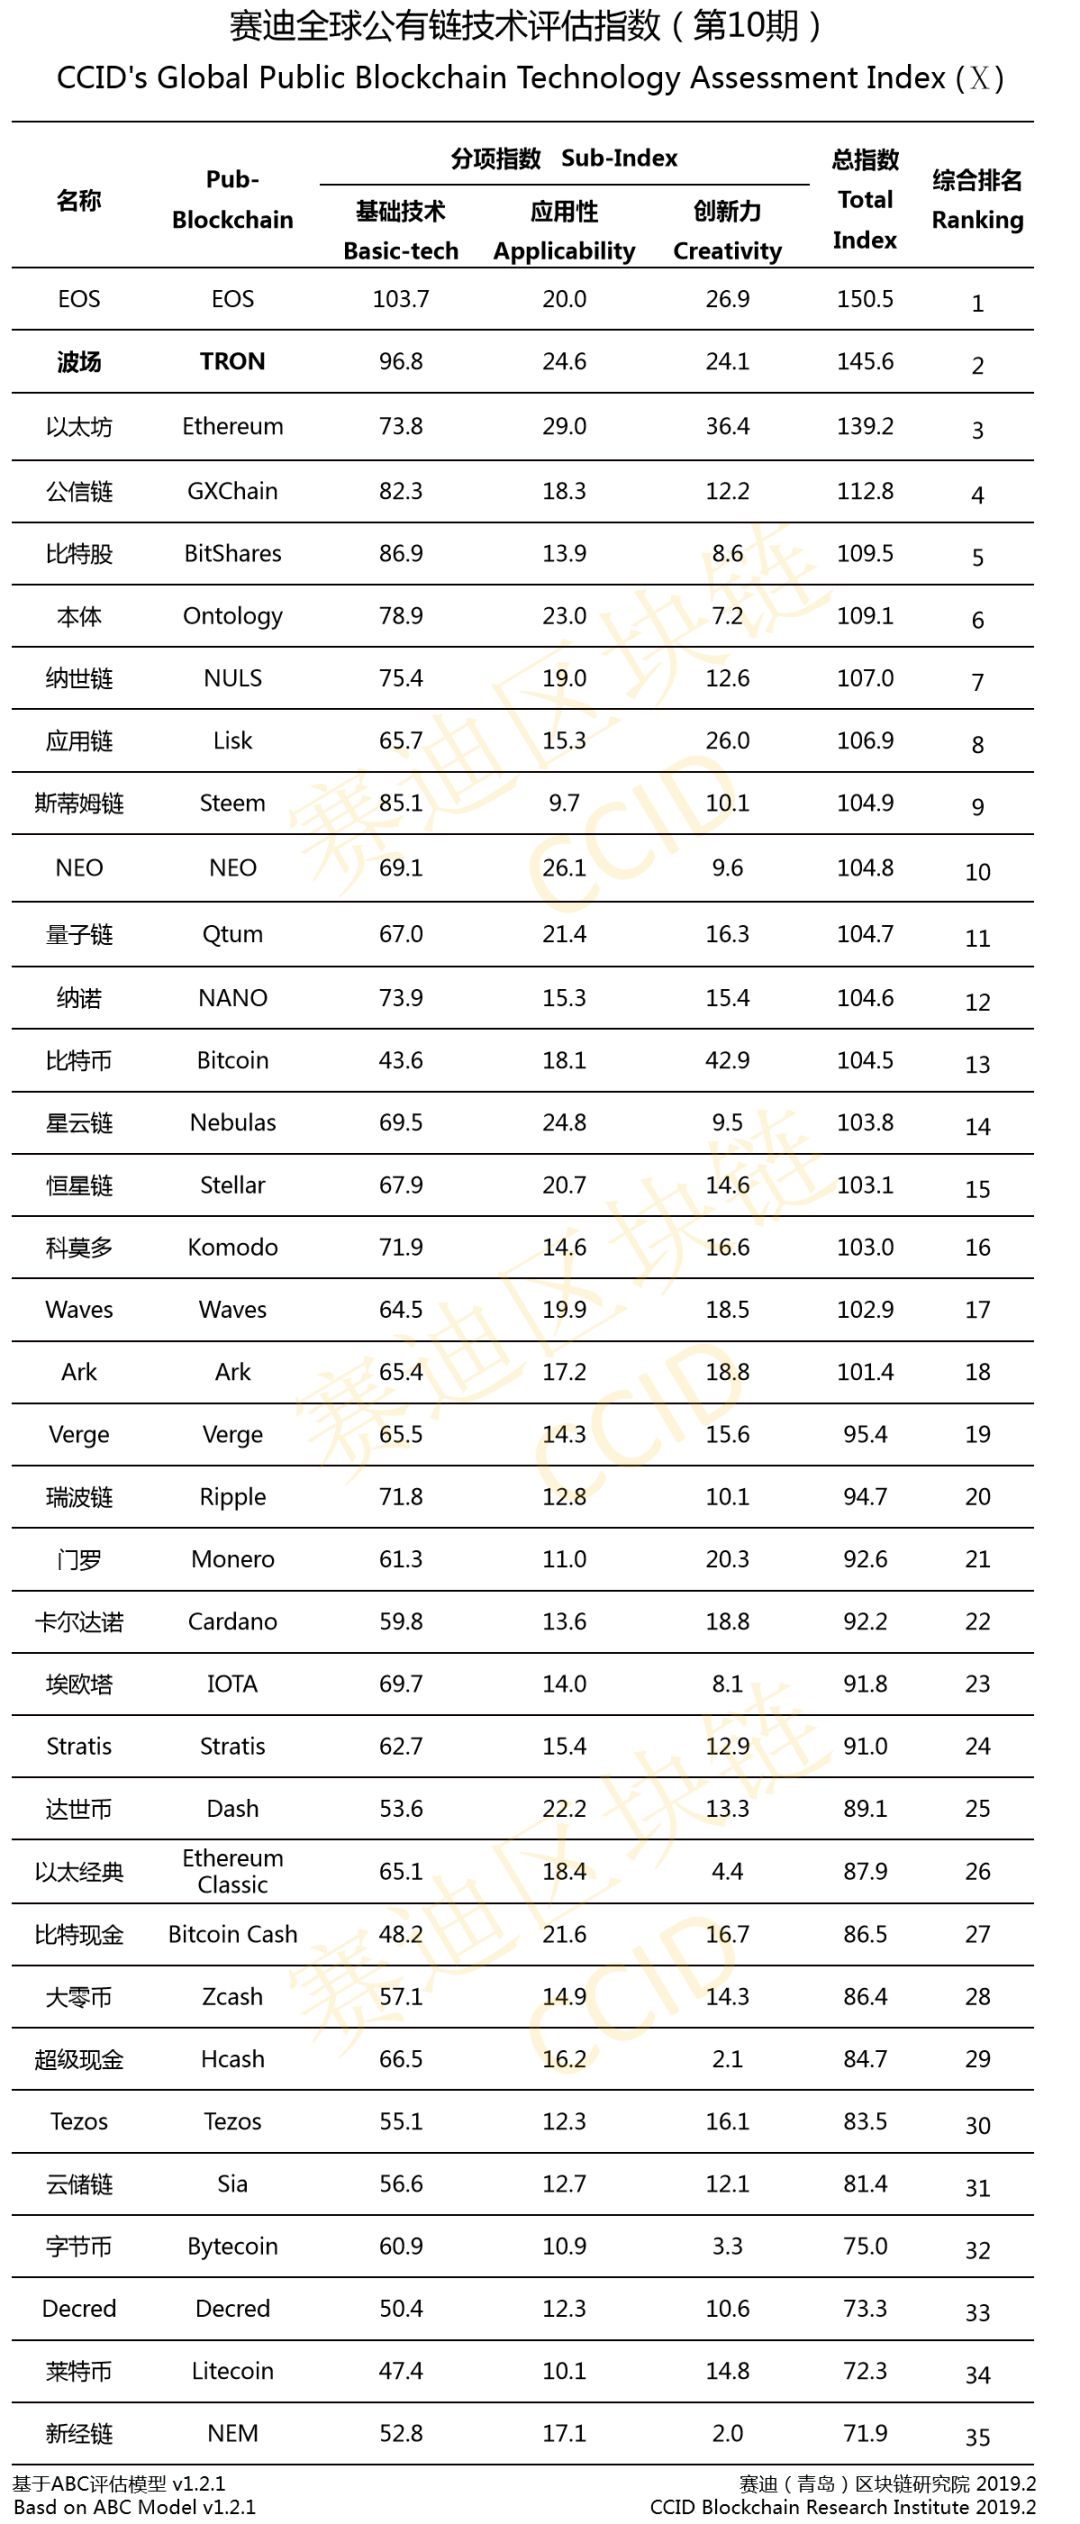 《结果发布》赛迪发布第十届全球公链技术评价指数EOS、波场、以太坊分列前三